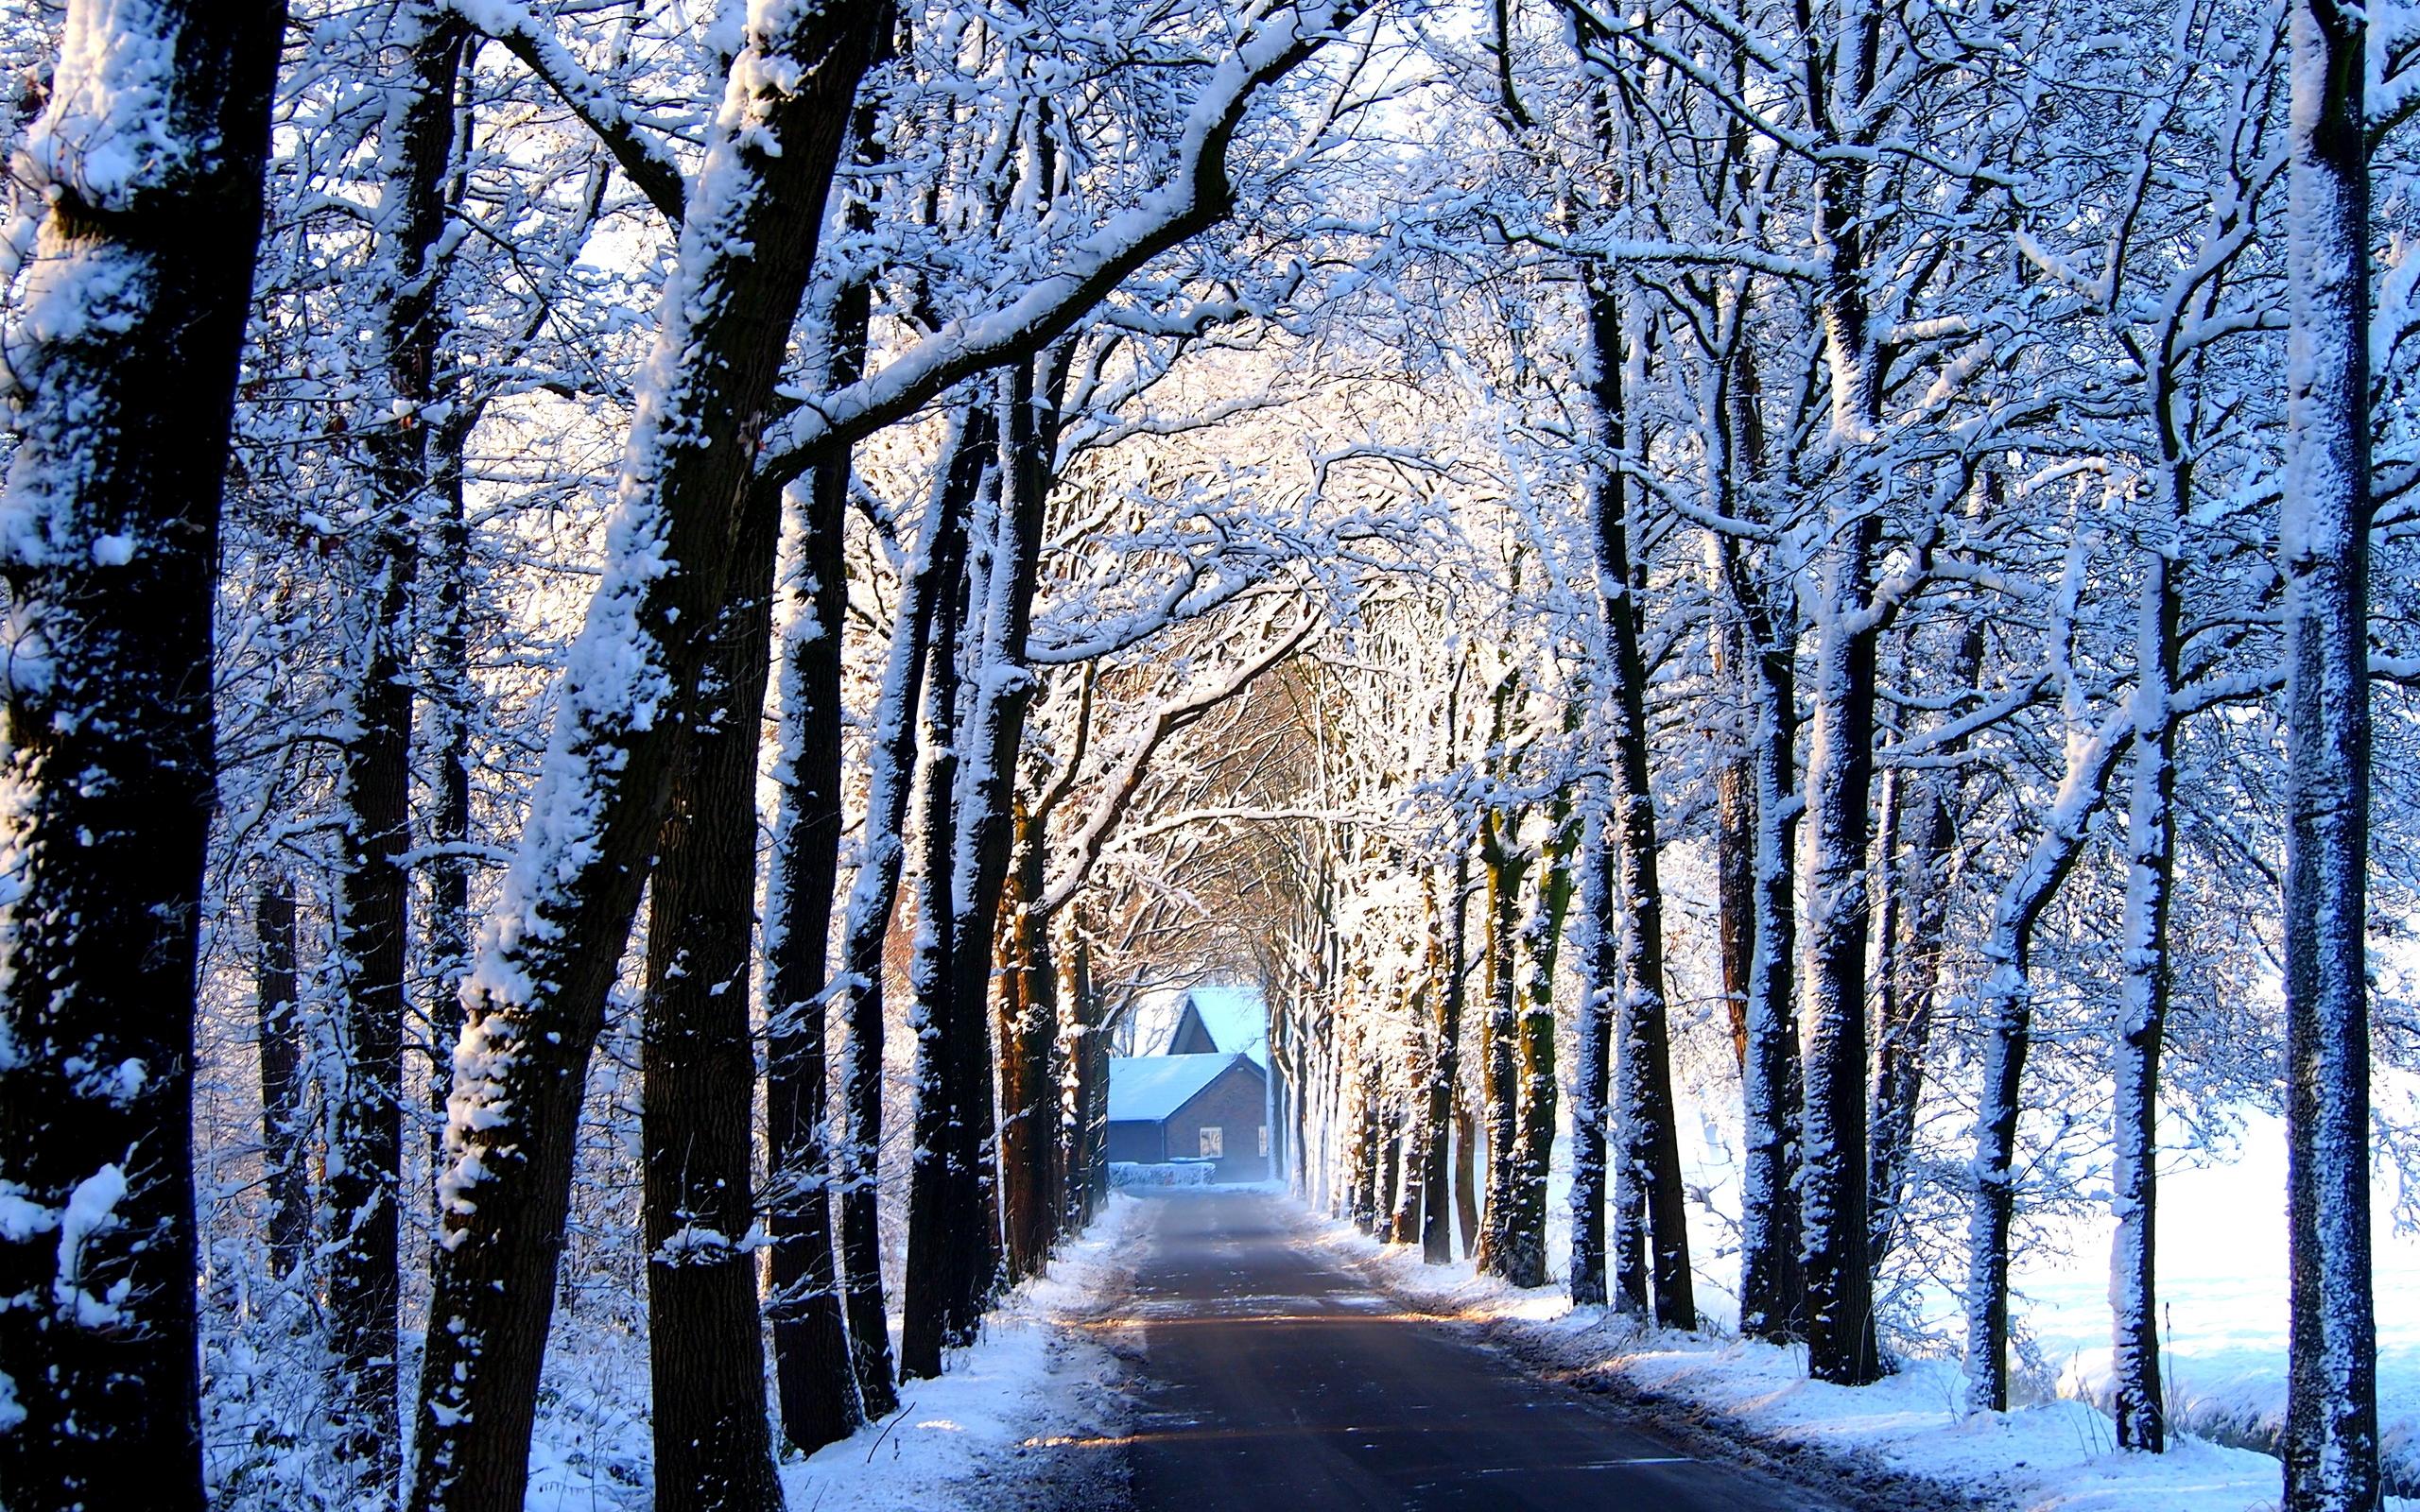 تصویر کلبه ای در انتهای جاده ی پوشیده از درخت در فصل زمستان 